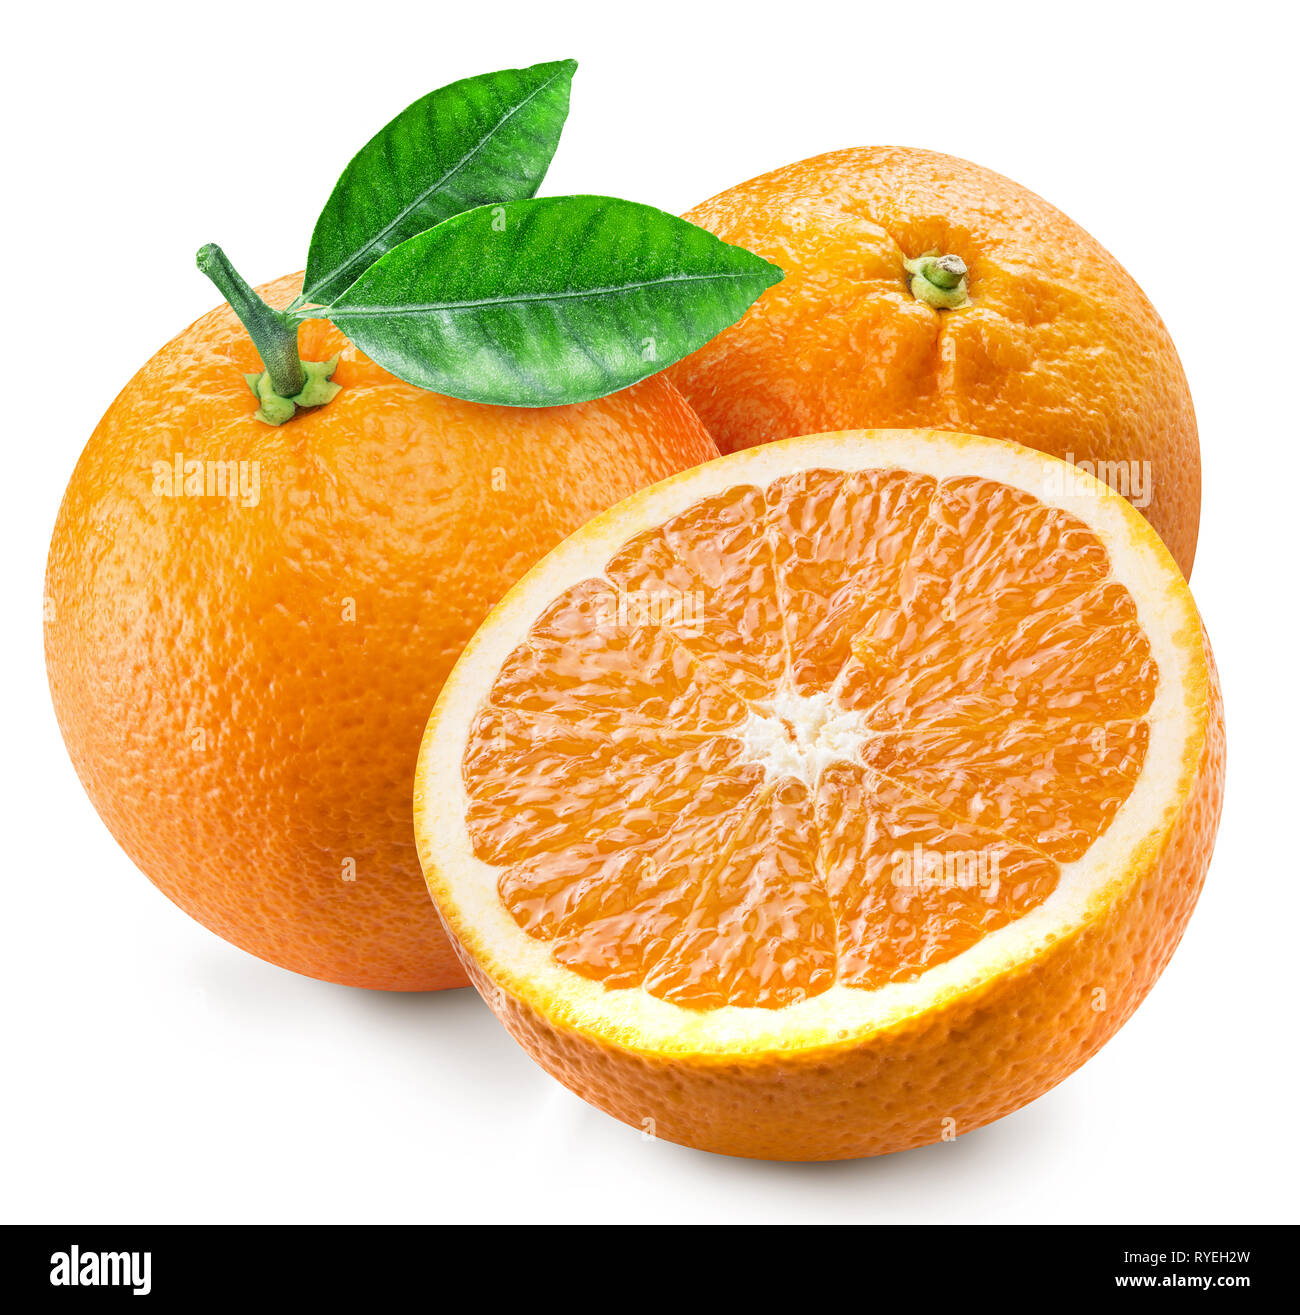 Frutas de naranja con hojas verdes y rodajas de naranja. Archivo contiene el trazado de recorte. Foto de stock